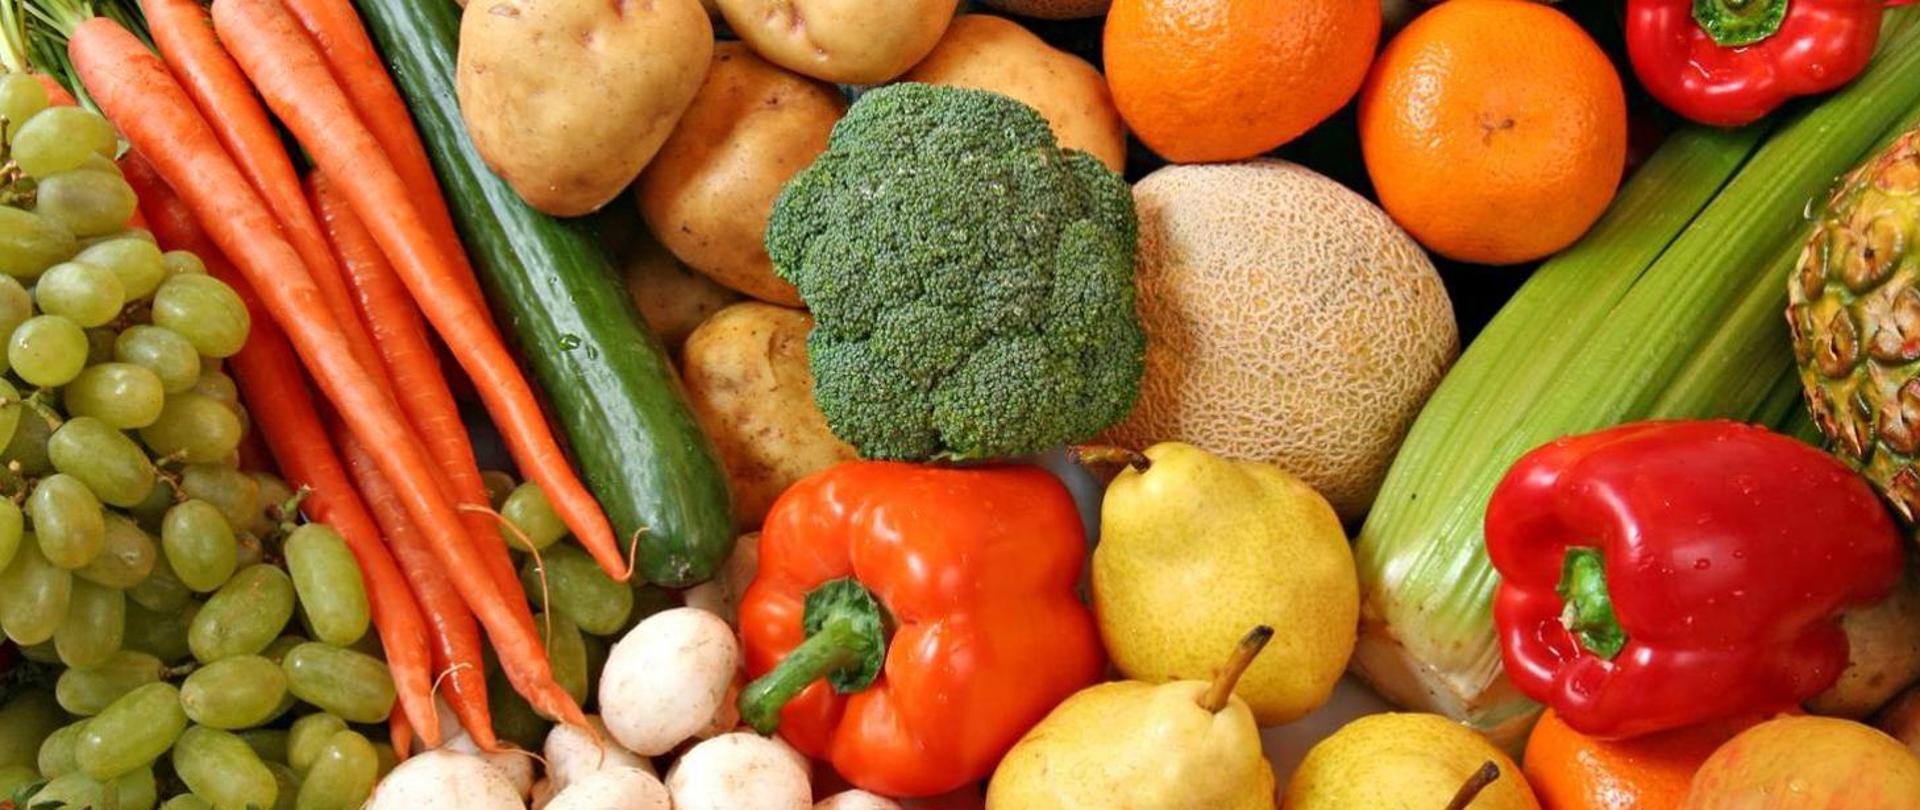 Kampania EFSA „Wybieraj bezpieczną żywność” - zdjęcie warzyw i owoców